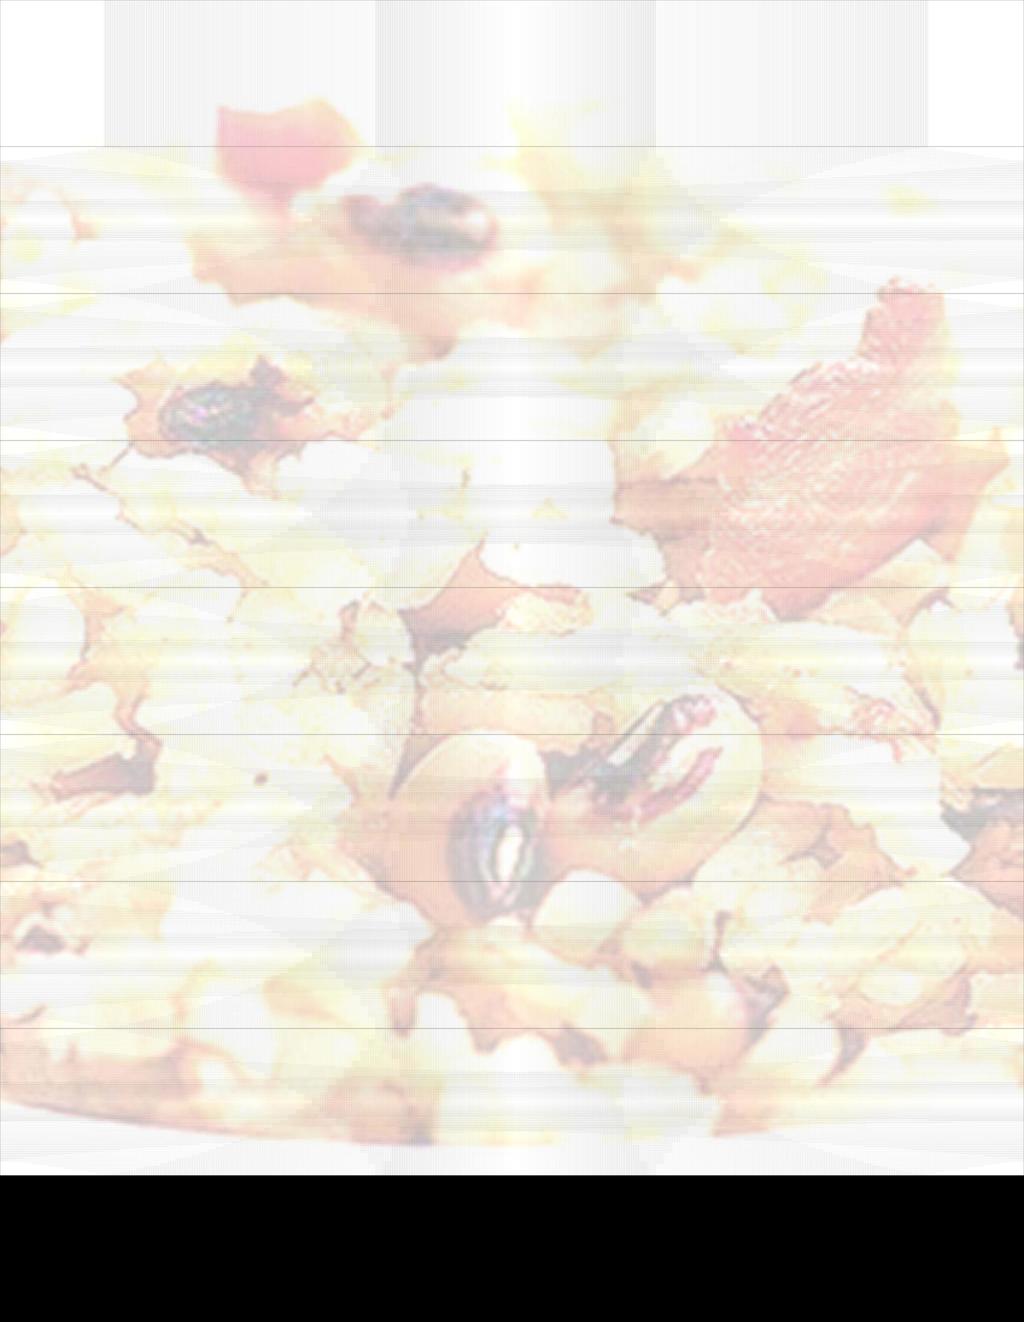 Black Eyed Peas Pelau 1 lb. black eyed peas (soaked overnight) 2 ½ cups brown rice 1 ½ lbs.